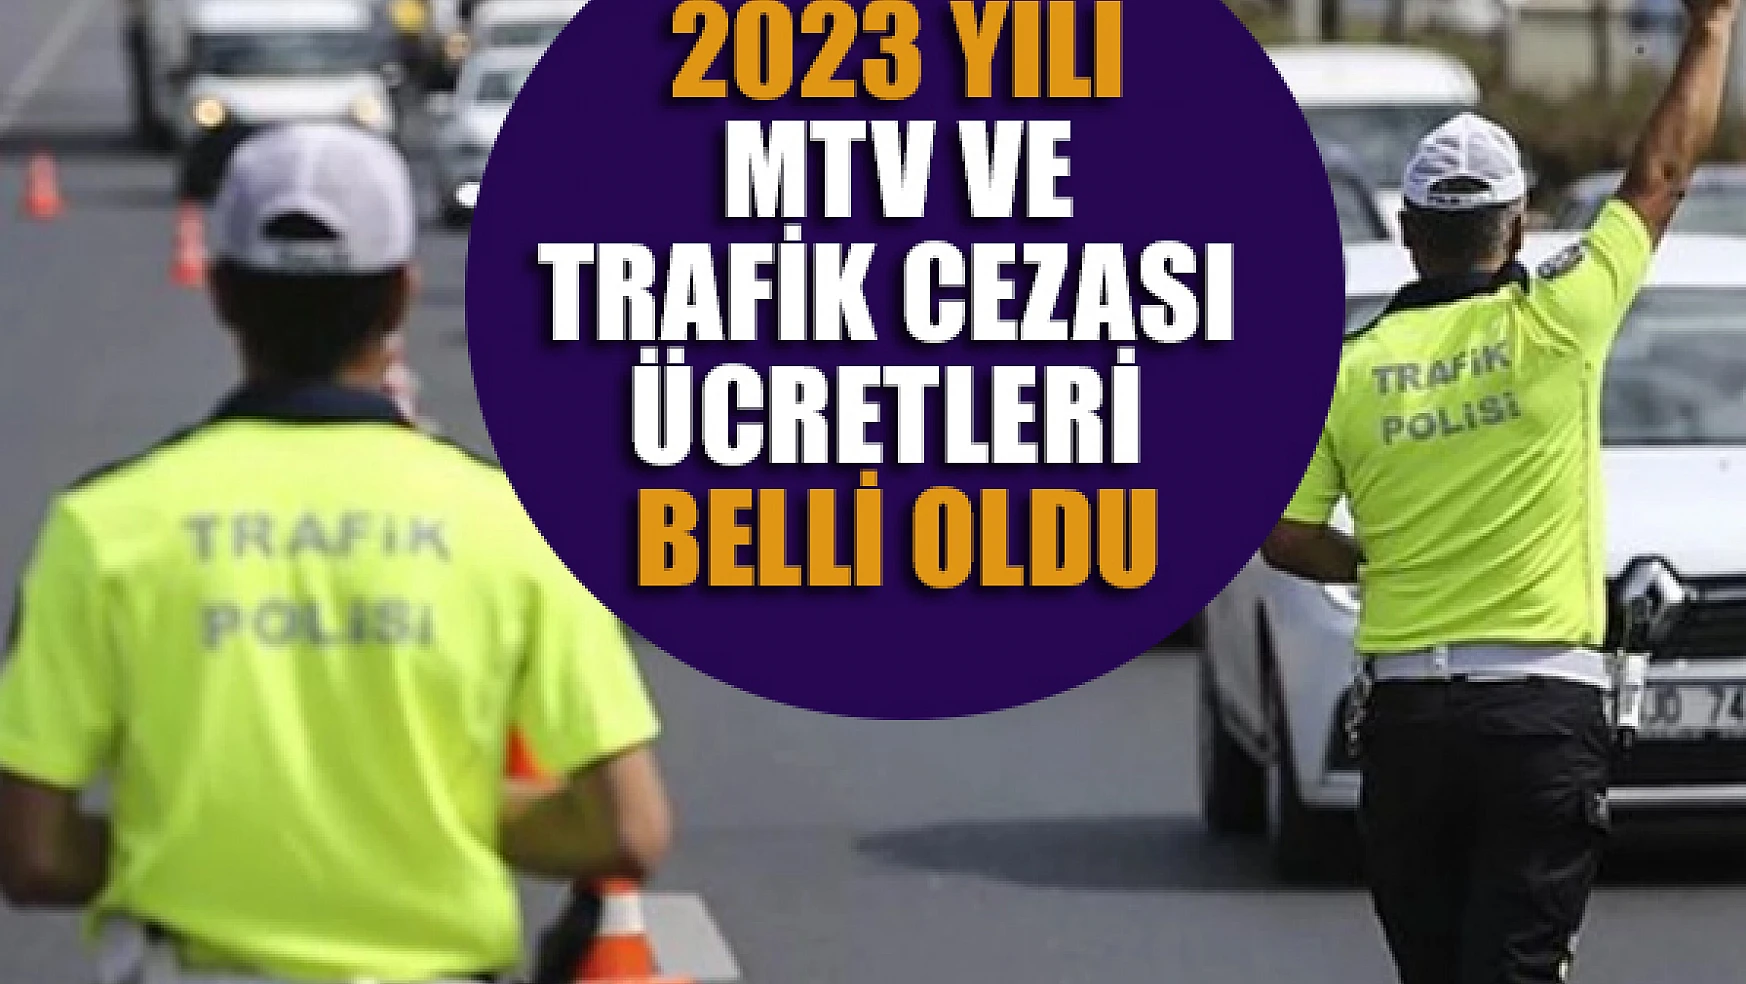 2023 yılı MTV ve trafik cezası ücretleri belli oldu